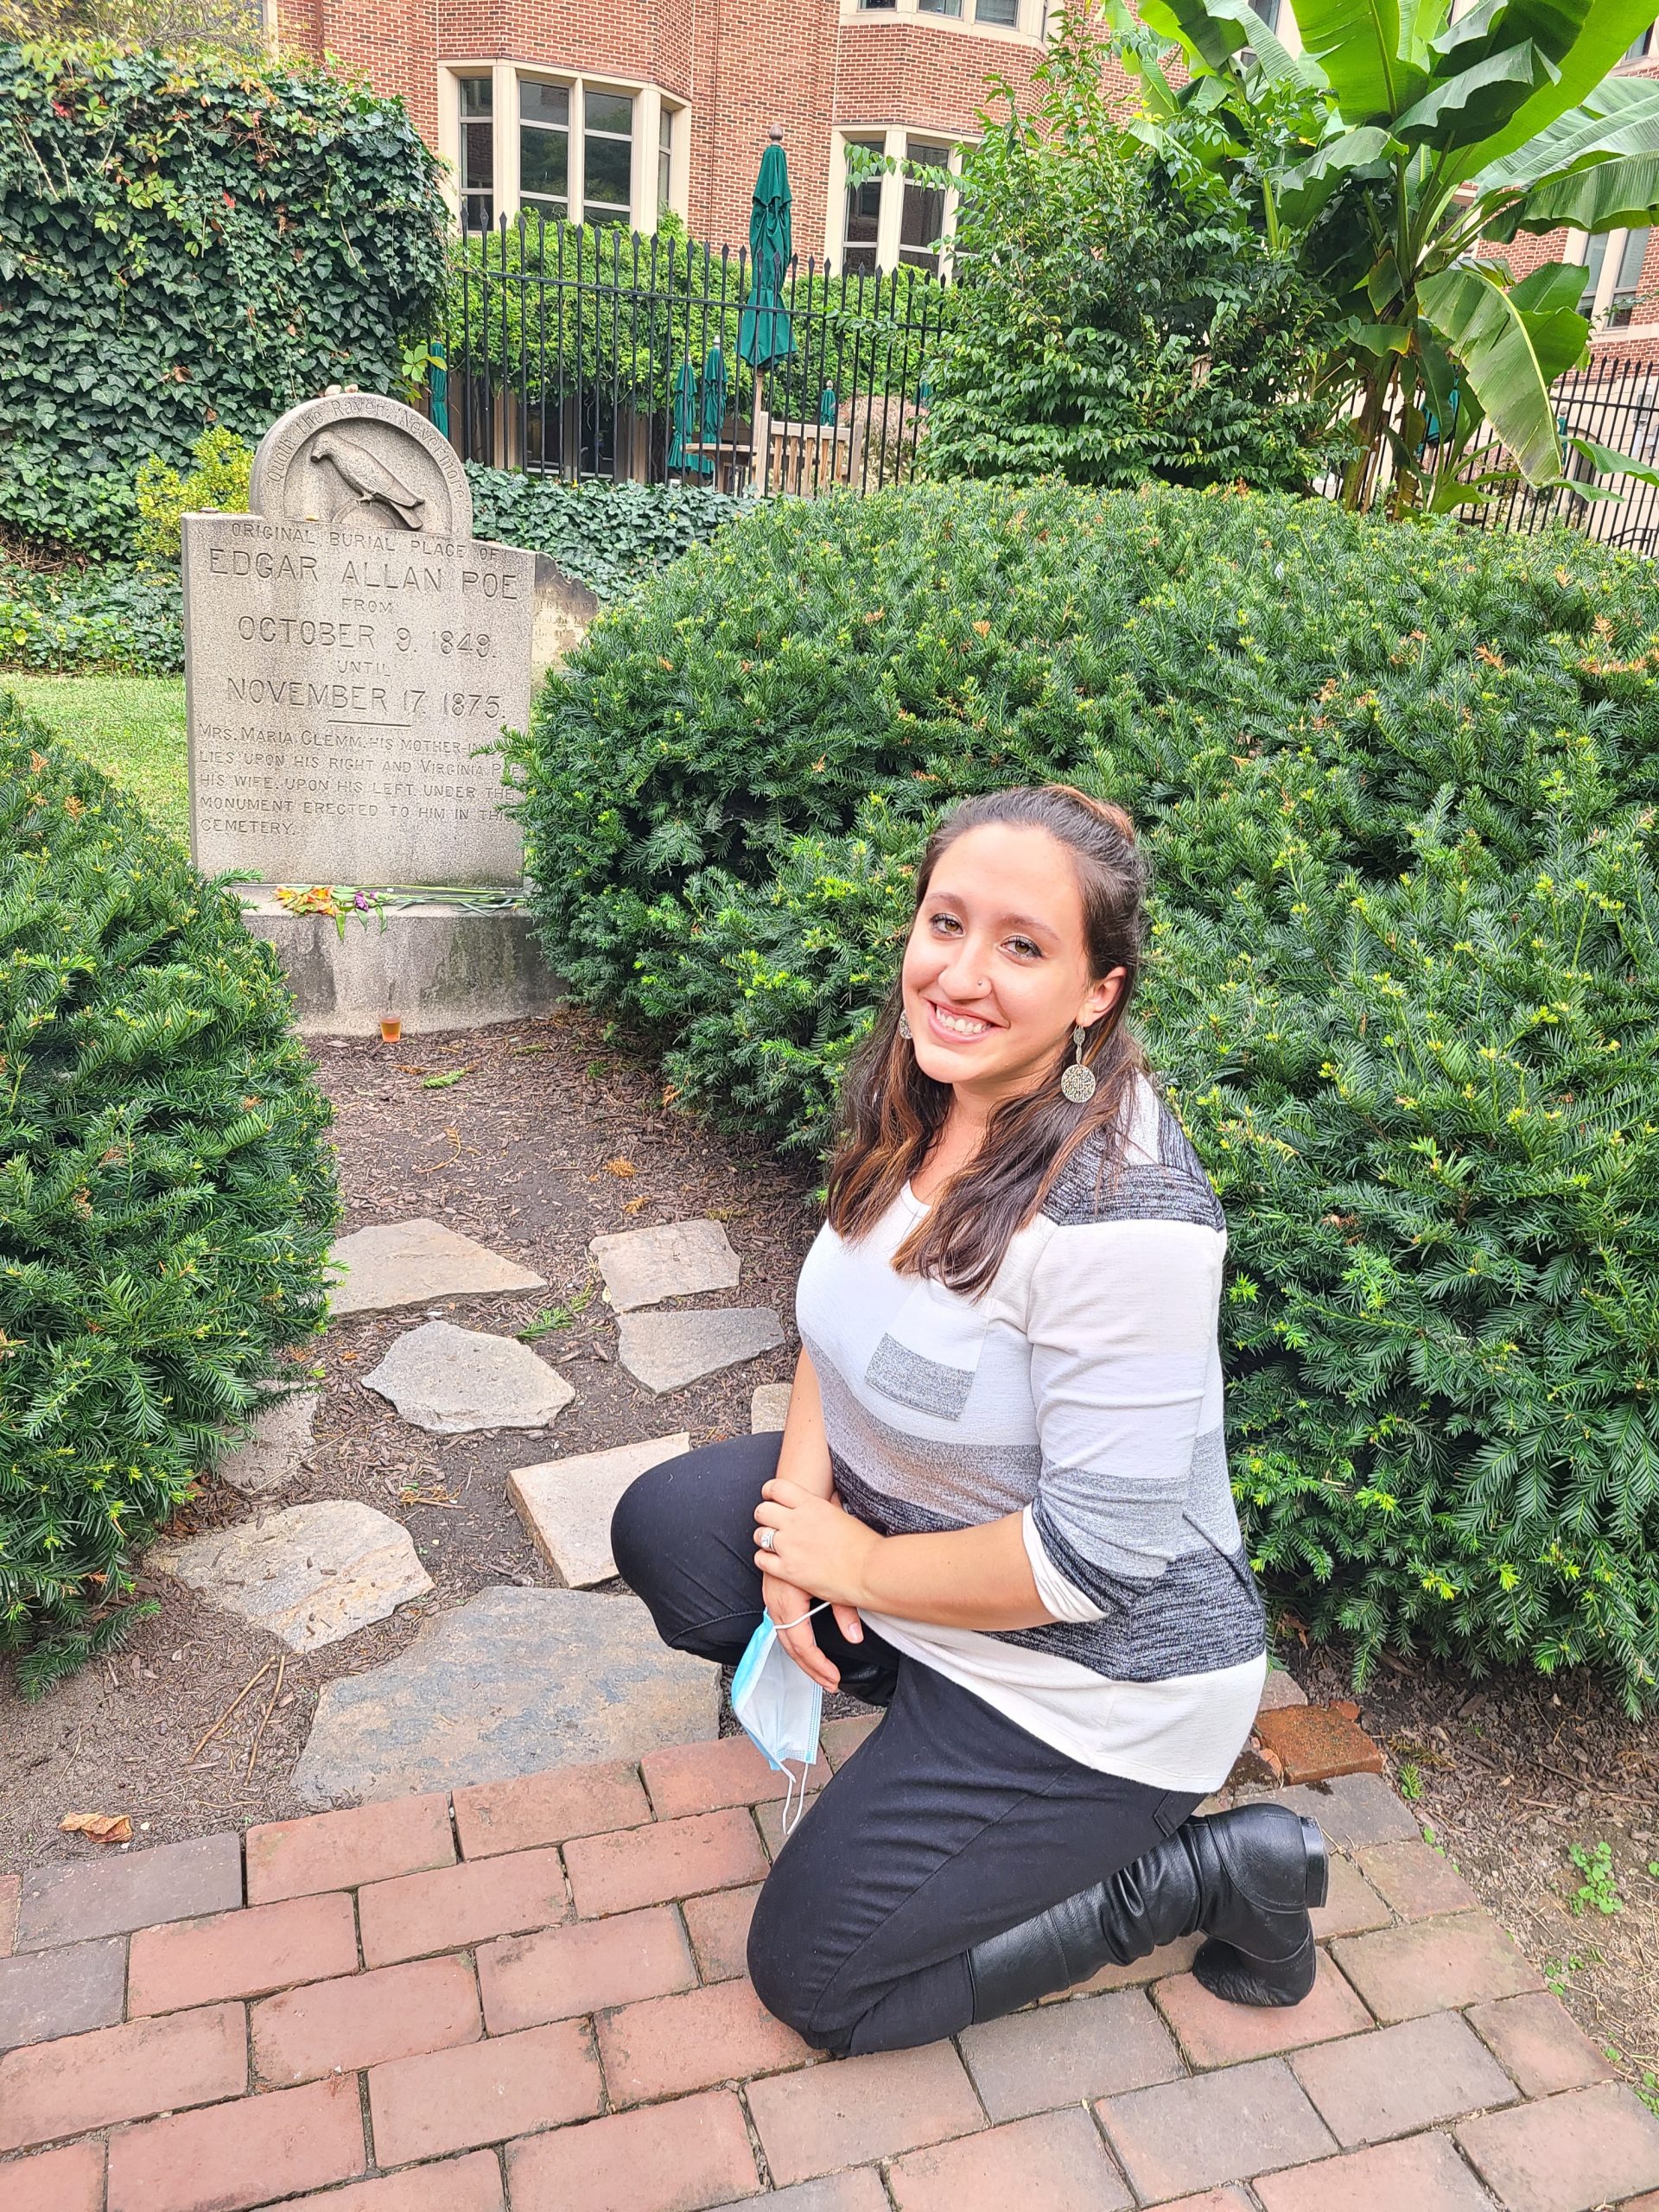 A woman posing next to Edgar Allan Poe's grave